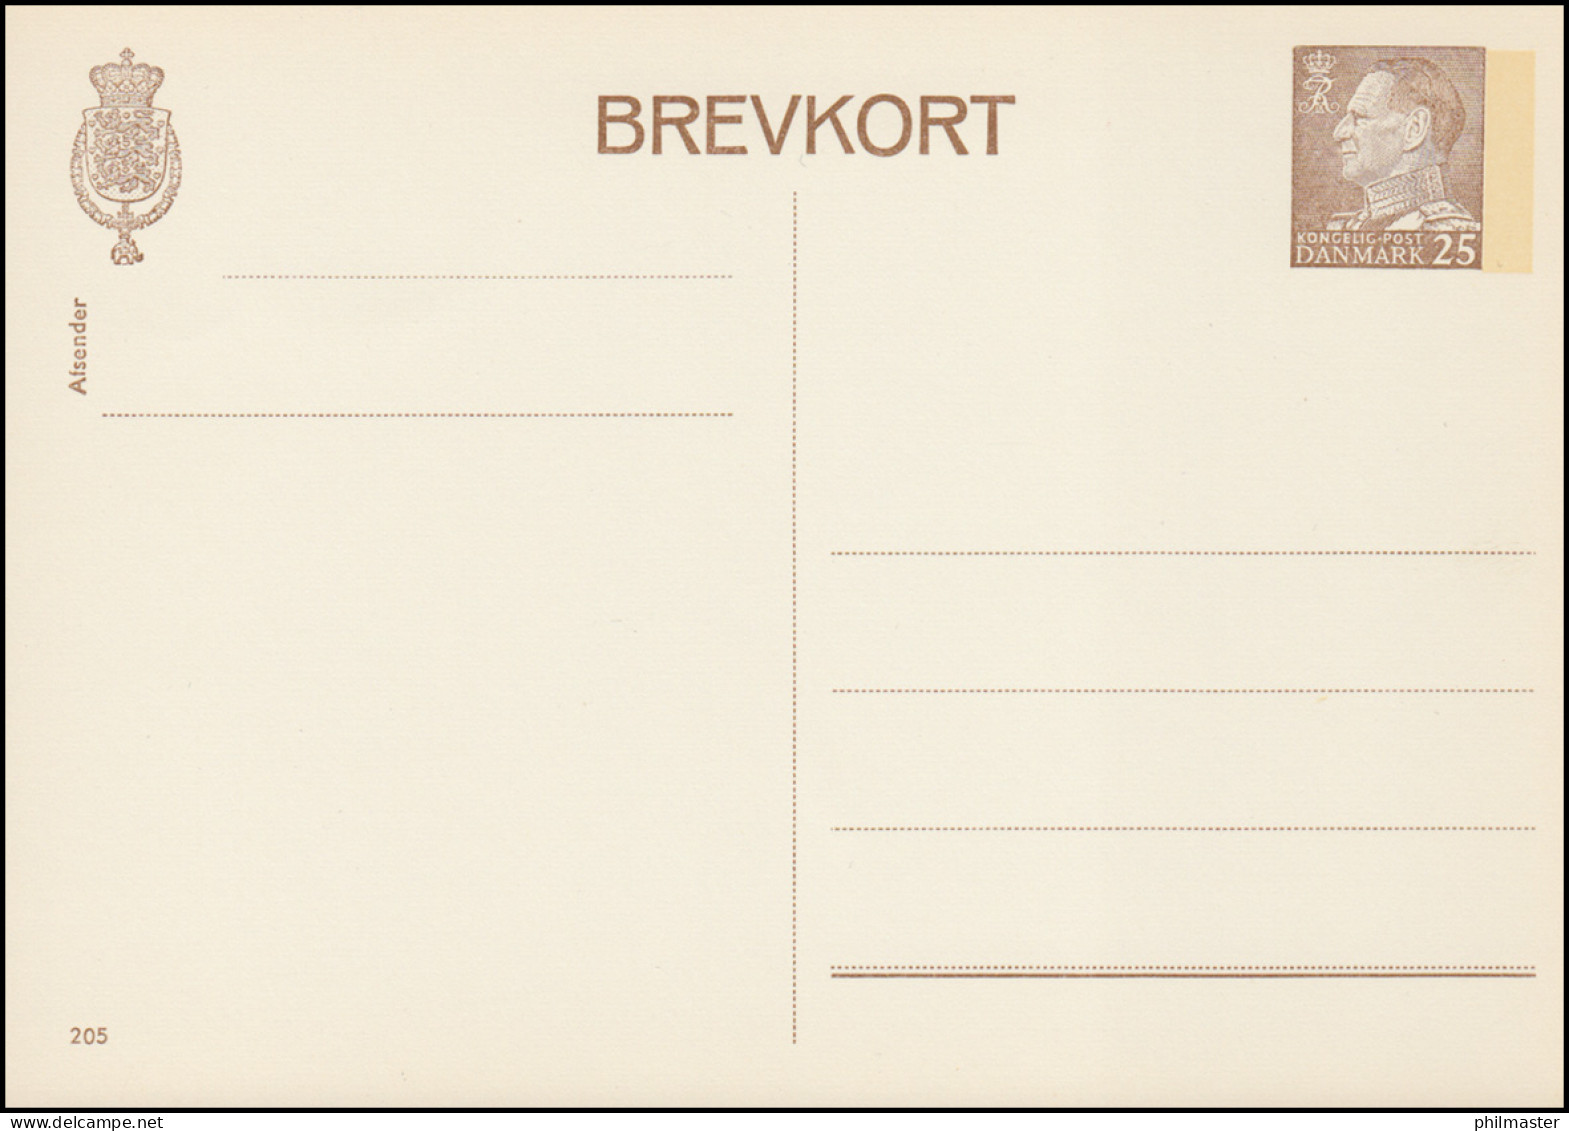 Dänemark Postkarte P 256 Frederik IX. 25 Öre, Kz. 205, ** - Postal Stationery